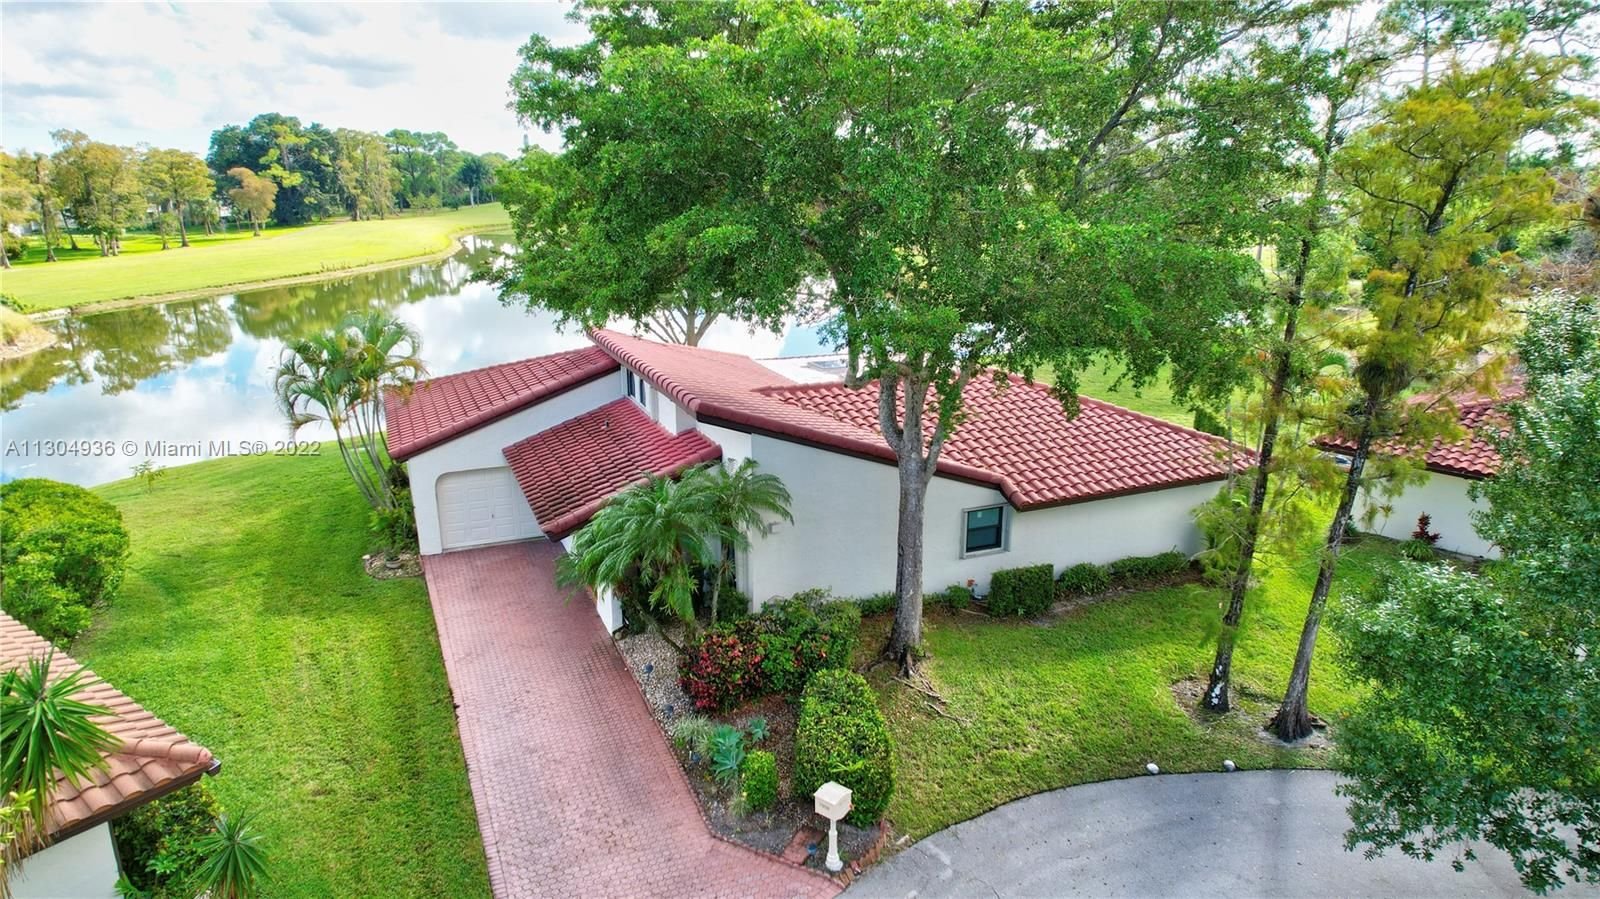 Real estate property located at 7916 Hibiscus Cir, Broward County, Tamarac, FL